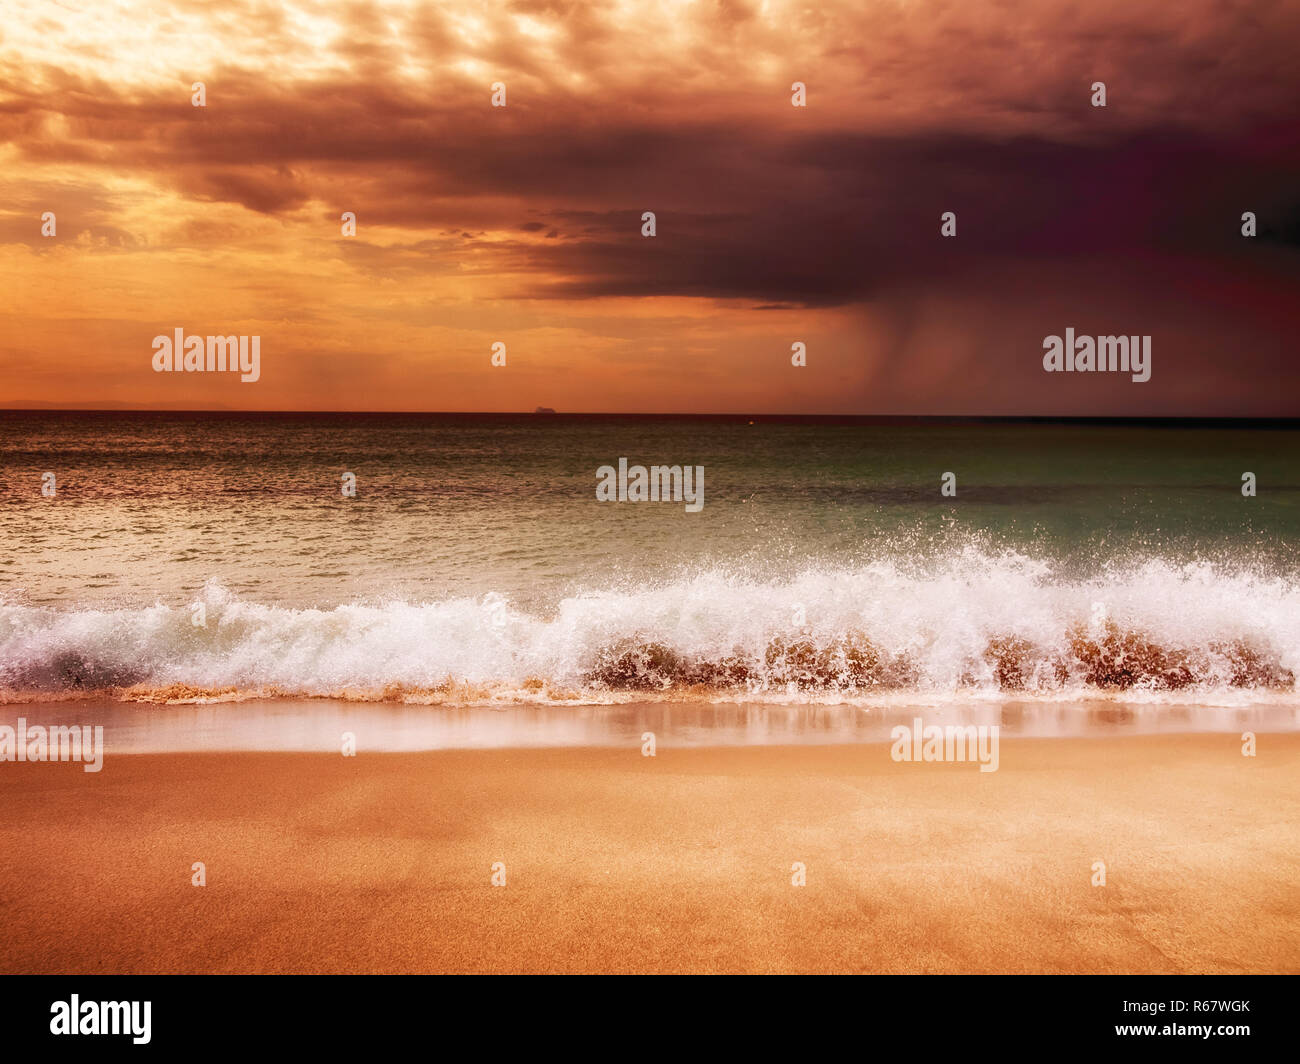 Les vagues sur la plage de sable fin au coucher de soleil Banque D'Images